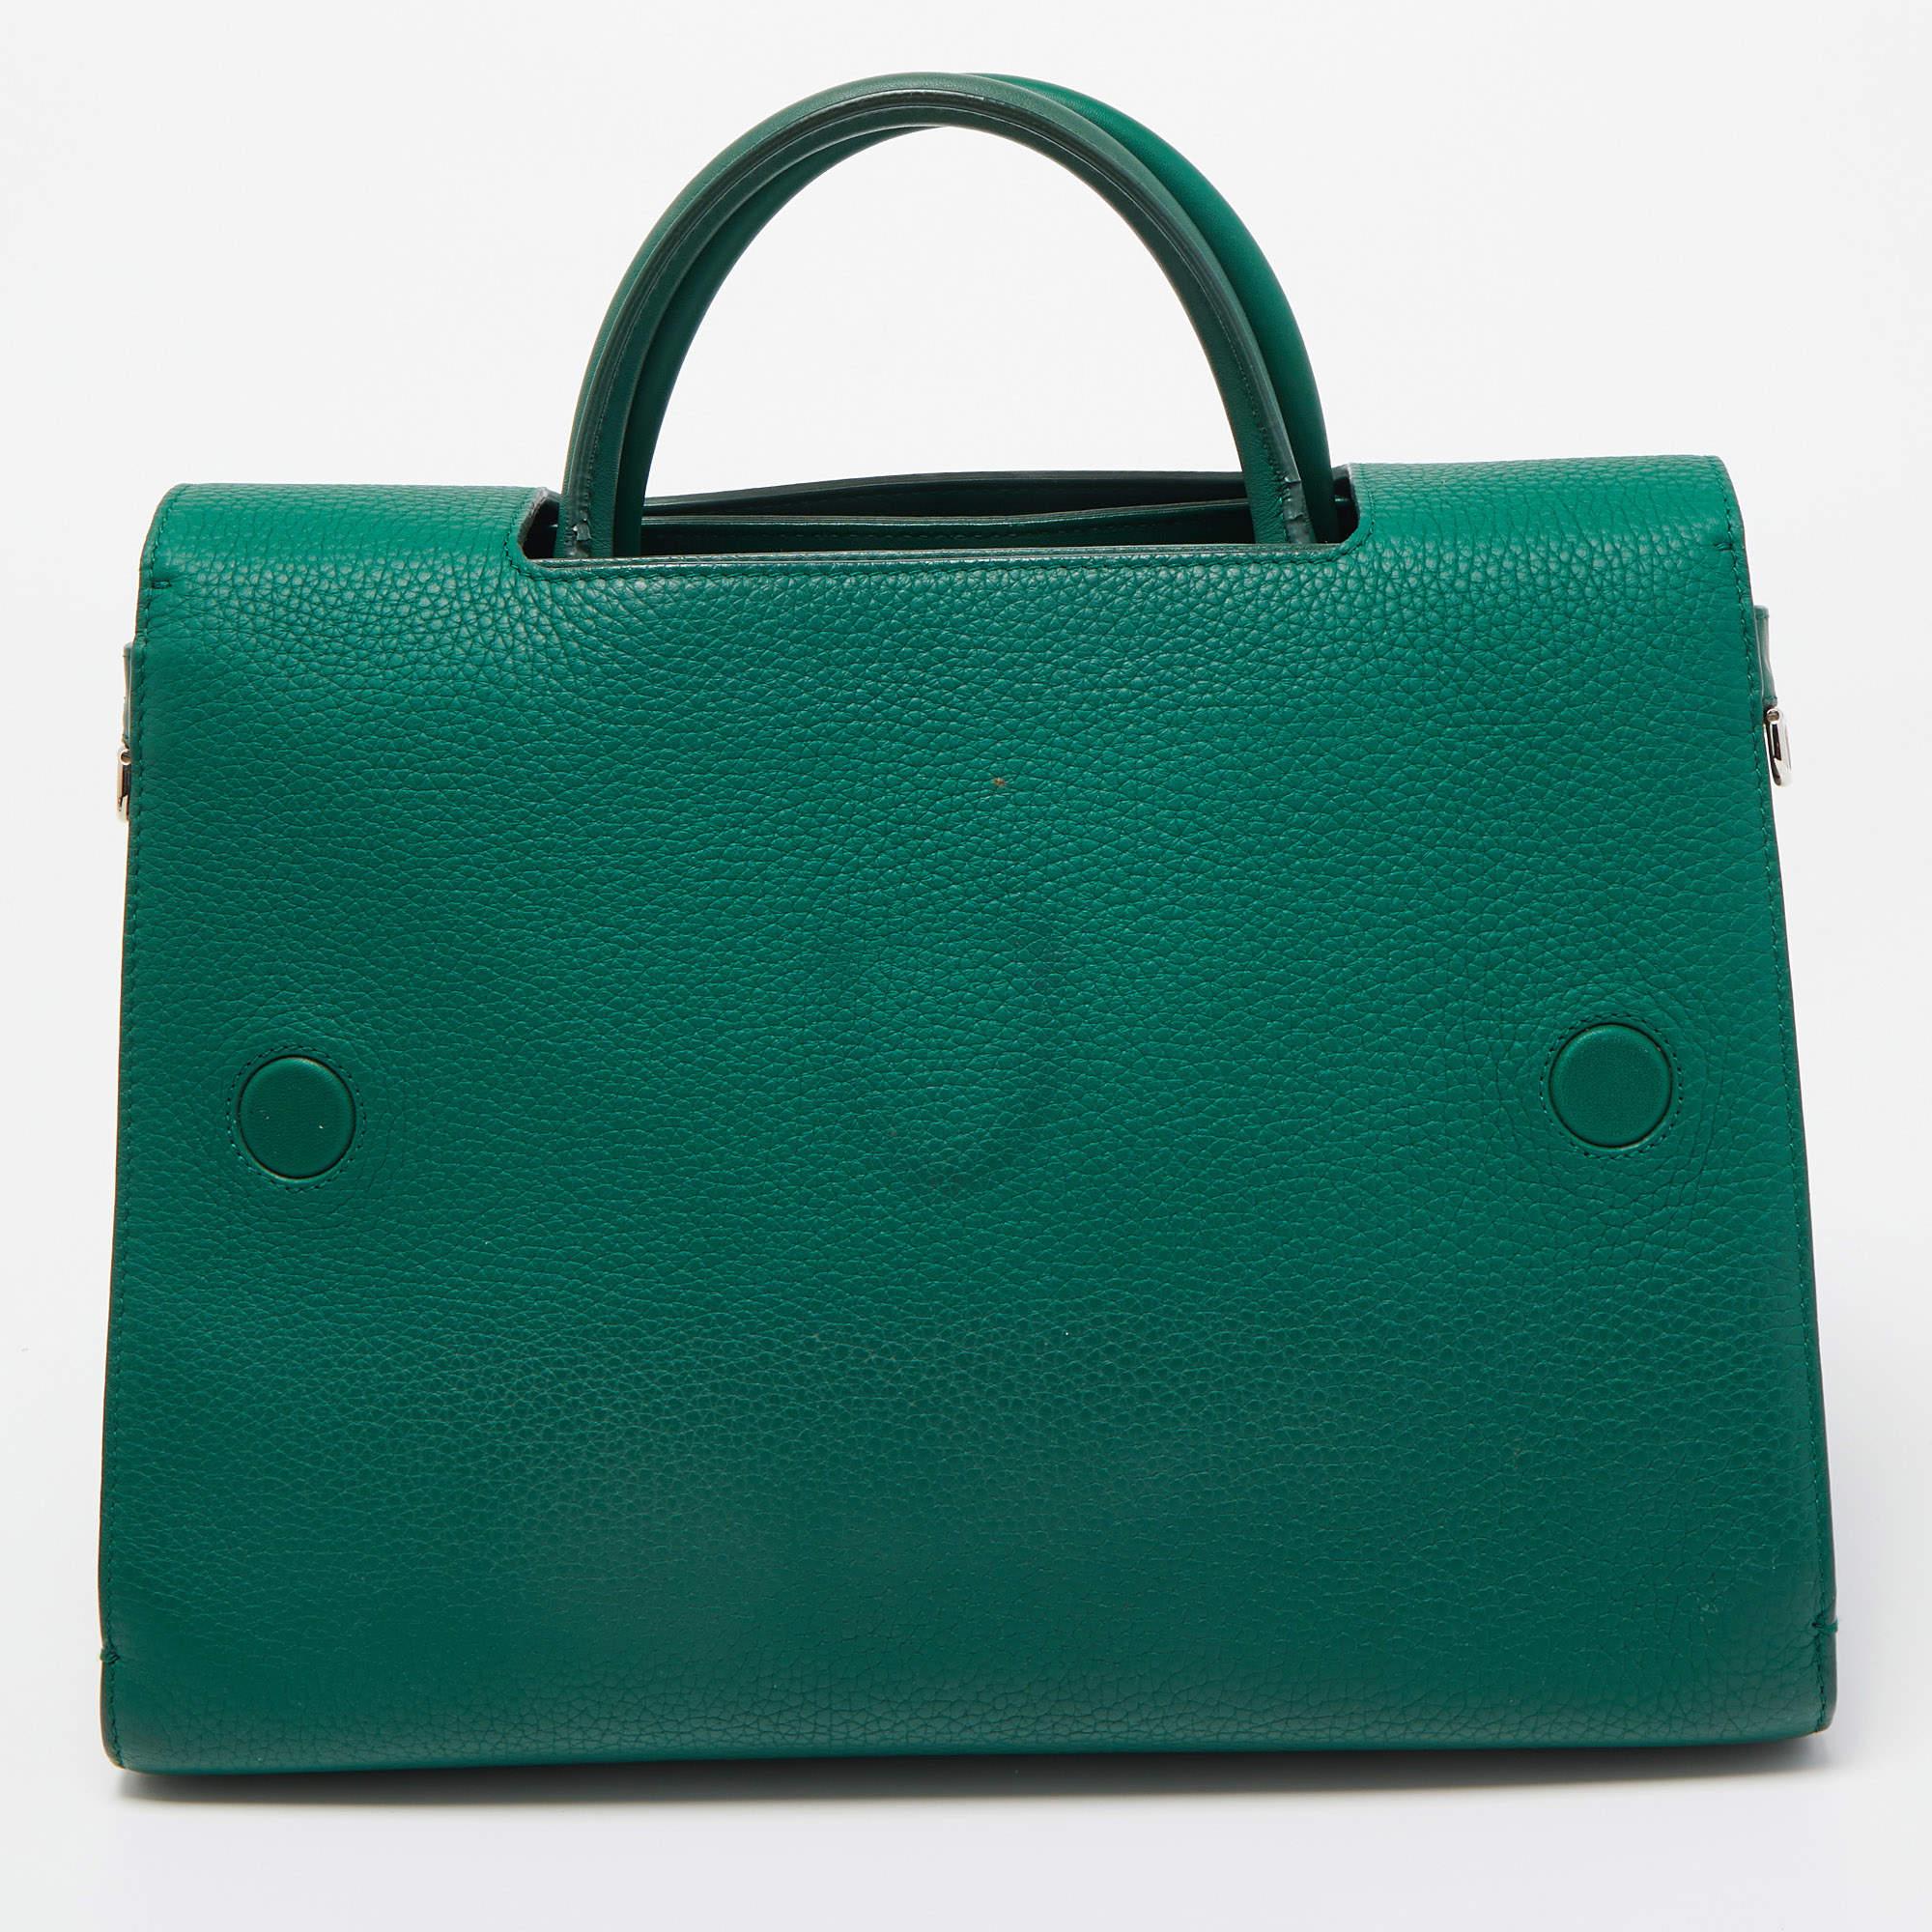 Dior Green Leather Medium Diorever Bag In Good Condition For Sale In Dubai, Al Qouz 2